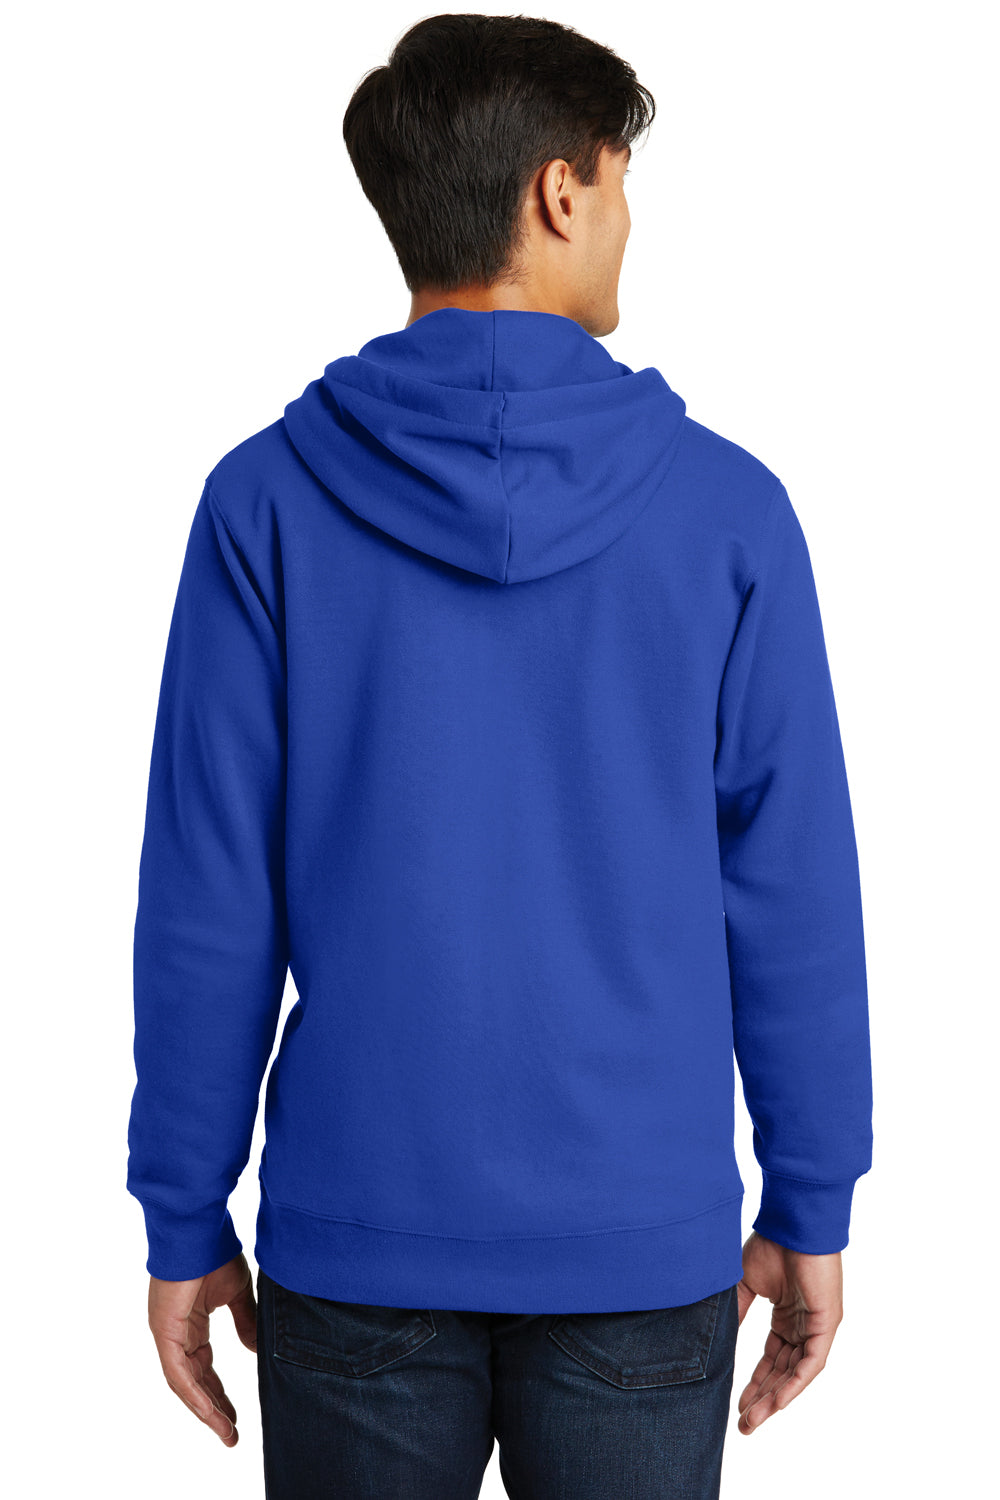 Port & Company PC850ZH Mens Fan Favorite Fleece Full Zip Hooded Sweatshirt Hoodie Royal Blue Back